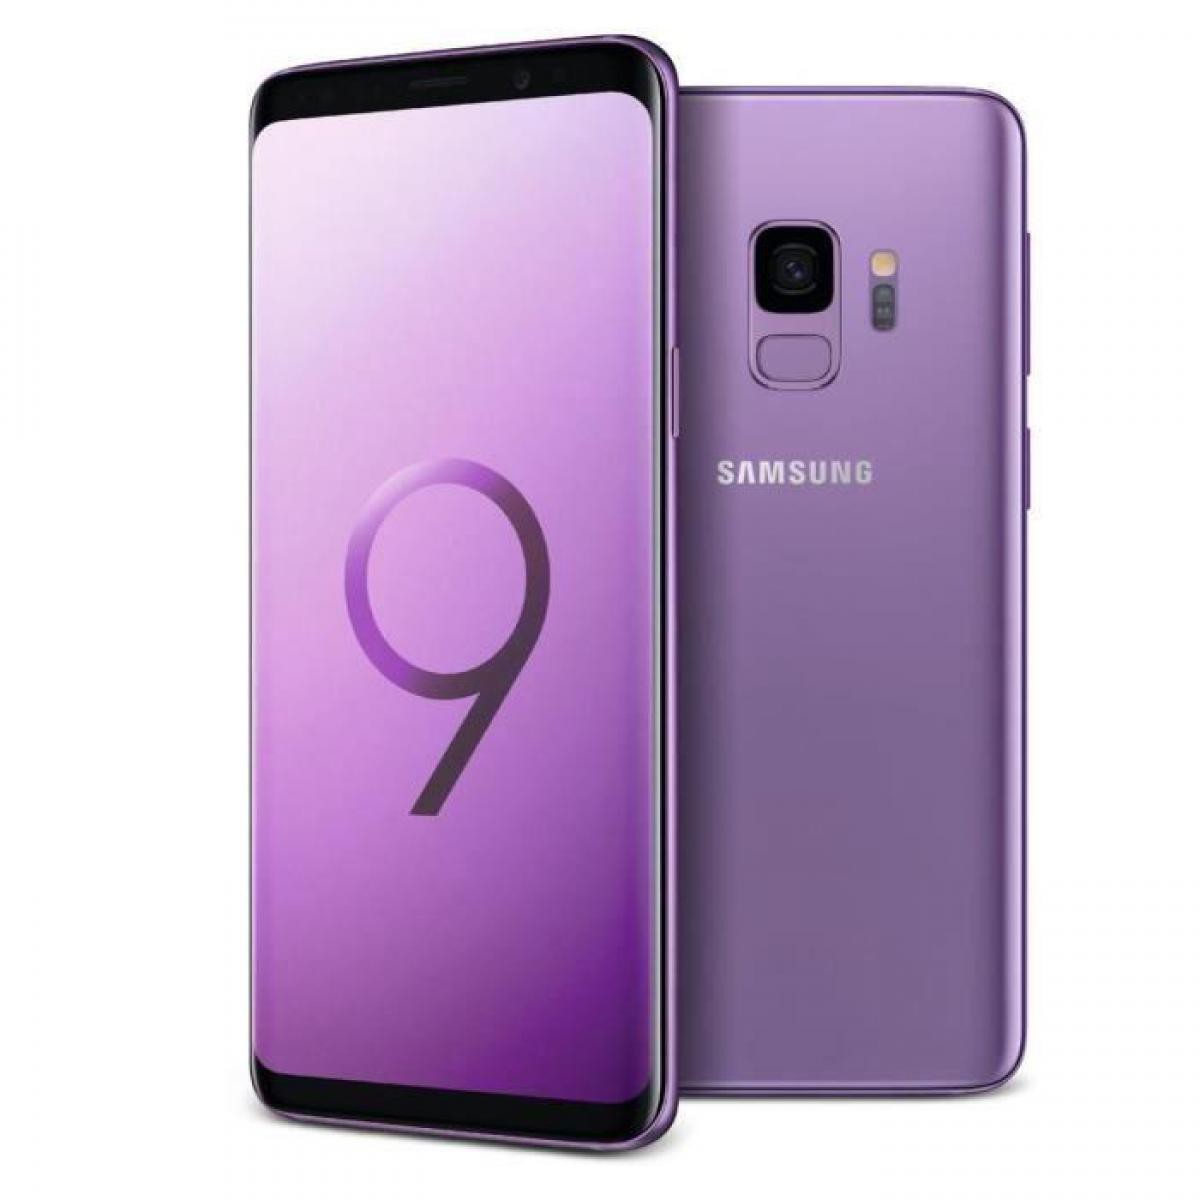 Samsung - Samsung Galaxy S9 64 Go Violet - débloqué tout opérateur - Smartphone Android